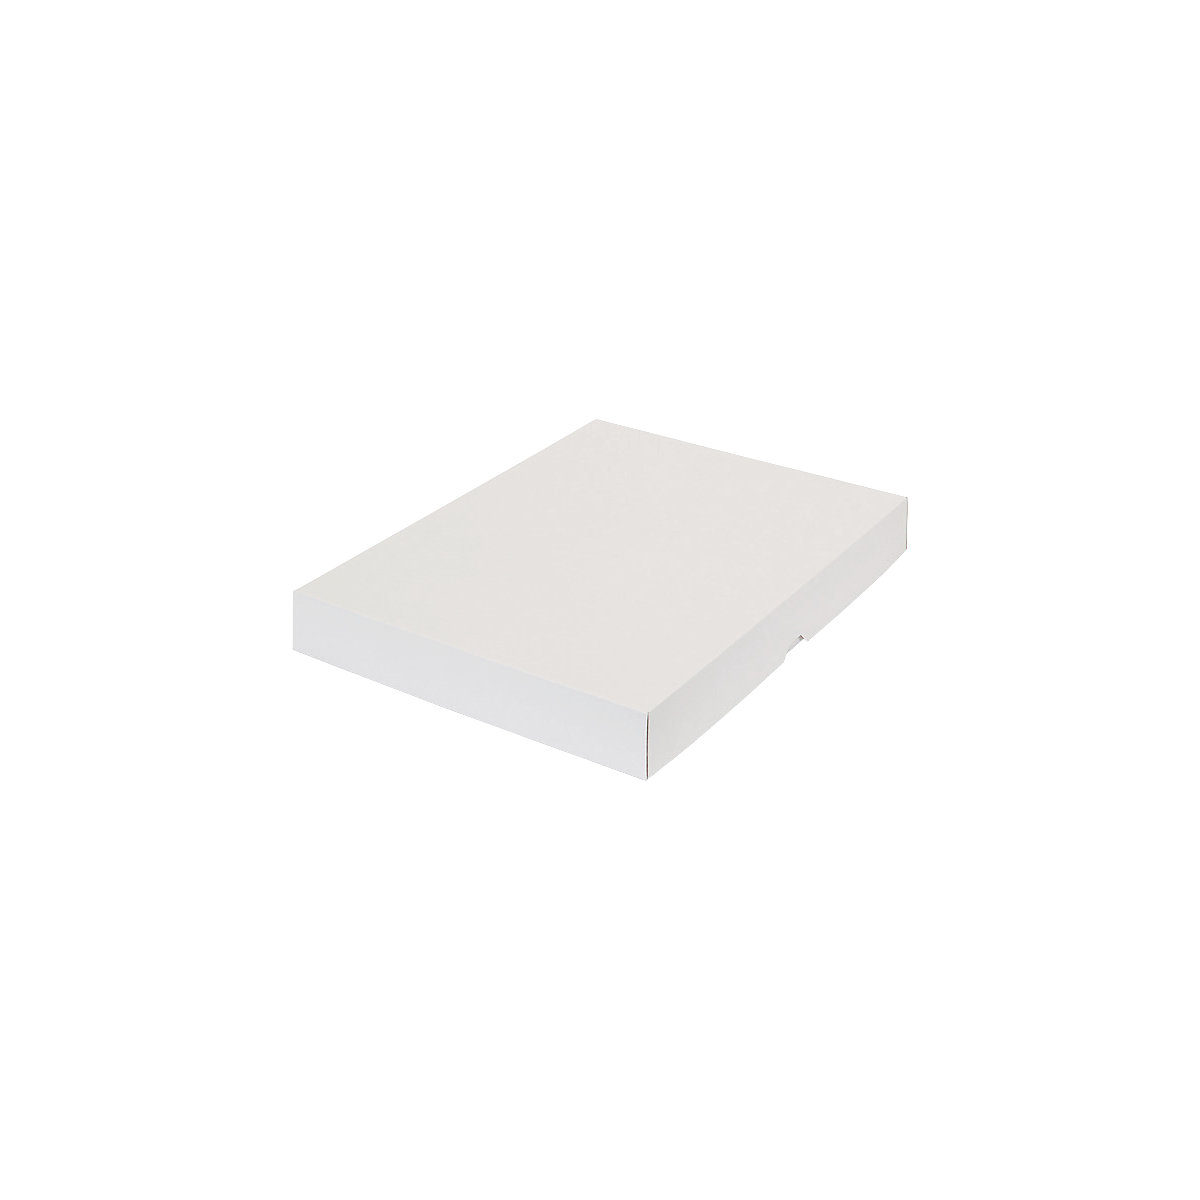 Stülpdeckelkarton, zweiteilig, Innenmaße 435 x 315 x 50 mm, A3, weiß, ab 100 Stk-35